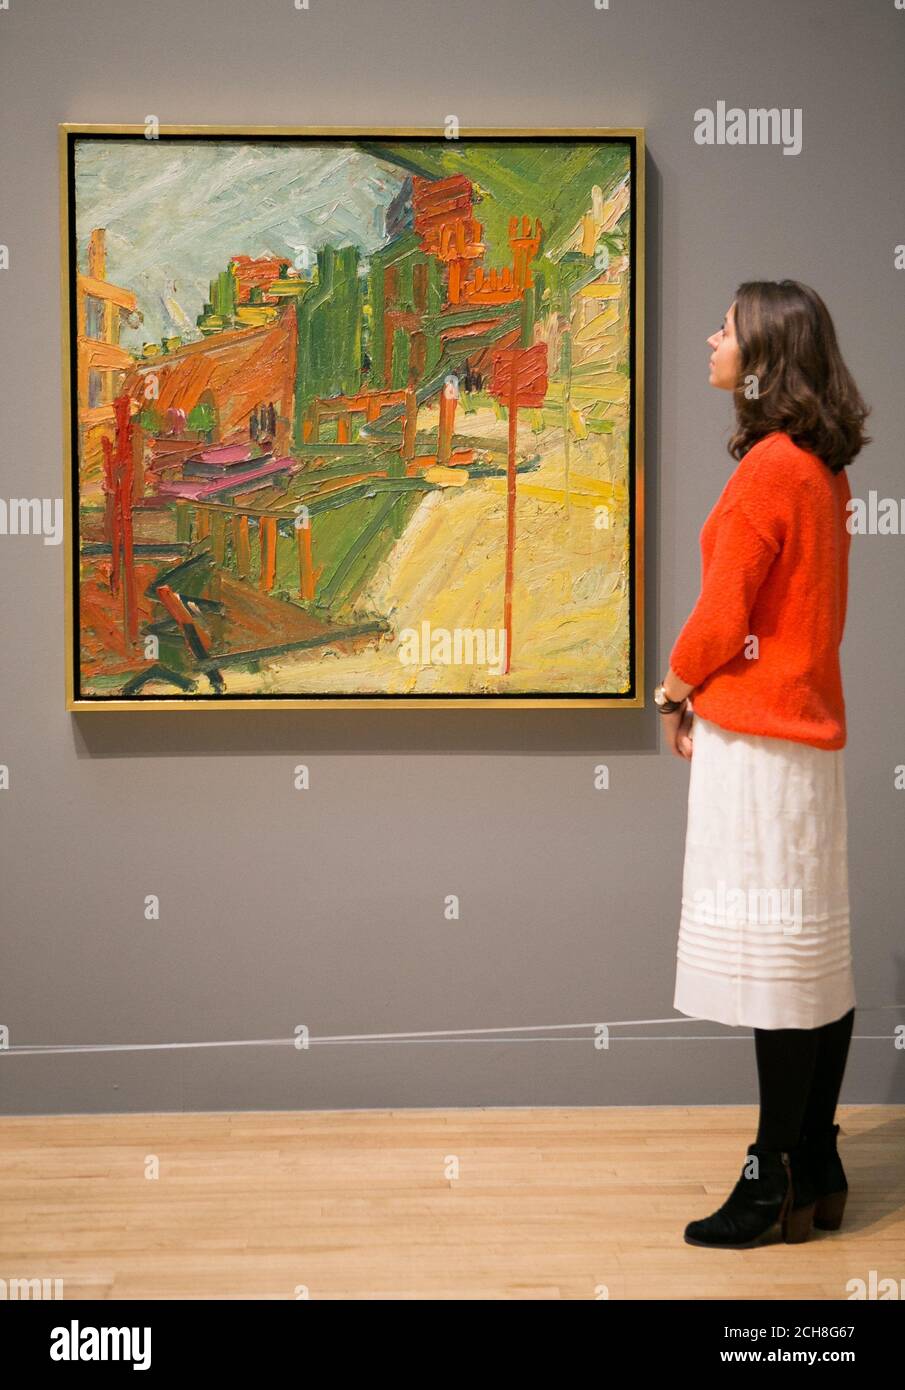 Un employé de la galerie regarde un tableau de Frank Auerbach intitulé « Reregard vers la gare de Mornington Crescent », 1972-4, lors d'une photocall pour une nouvelle exposition de l'artiste britannique au Tate Britain à Londres. Banque D'Images